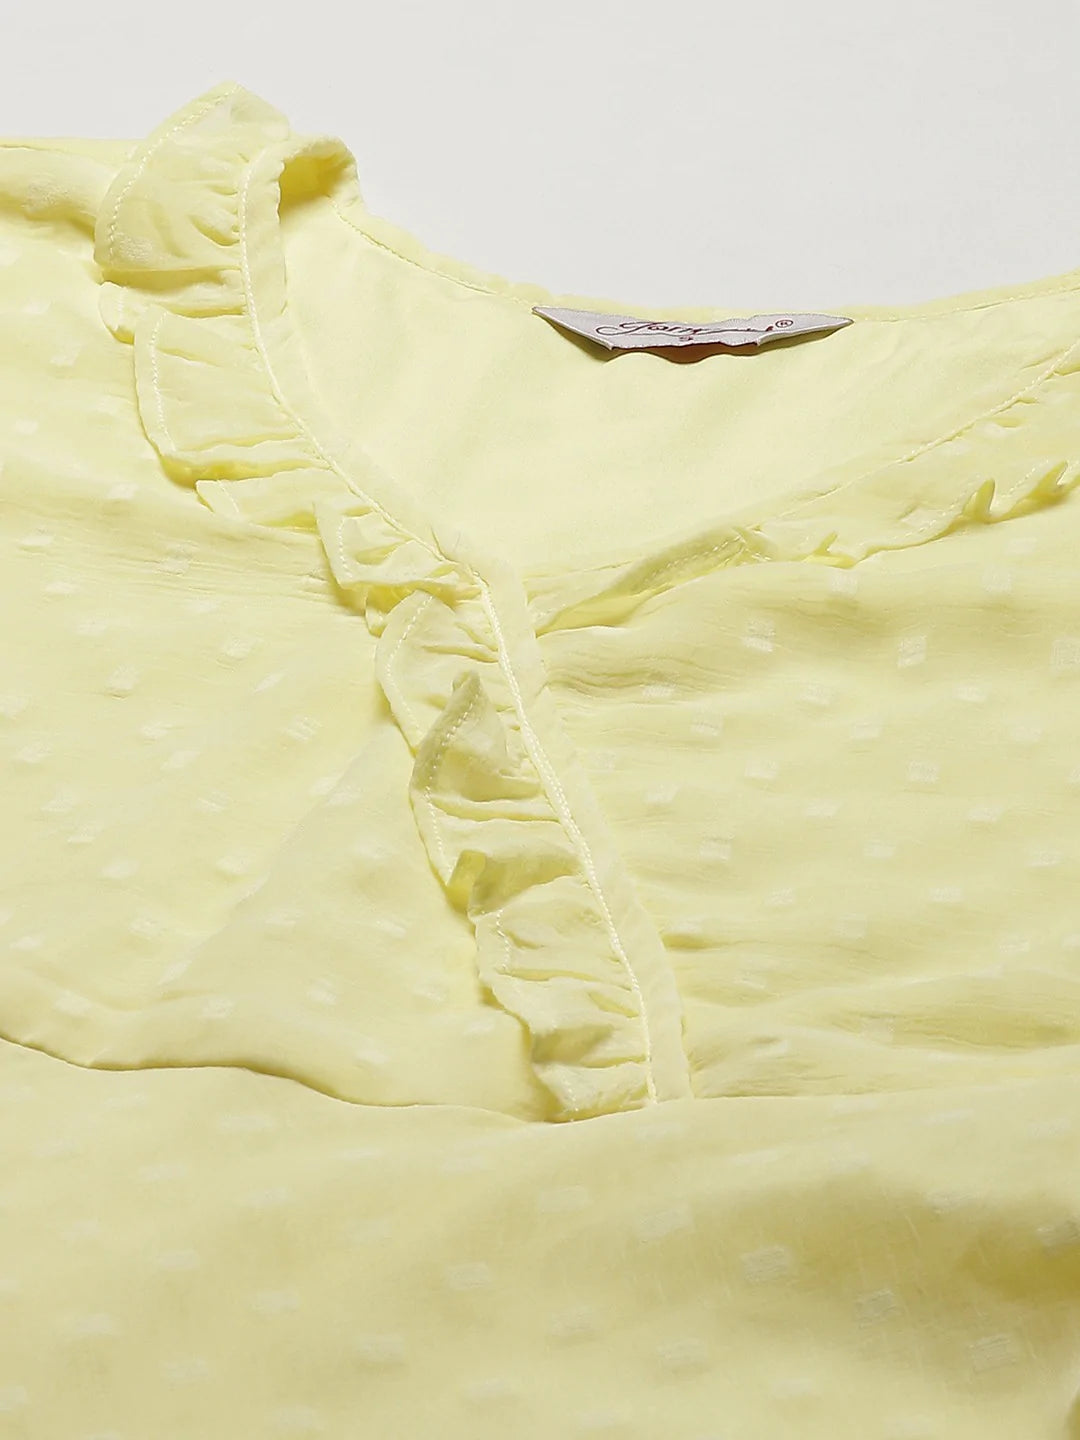 Women Yellow Woven Design Flared Kurta ( JOK 1403 Yellow )